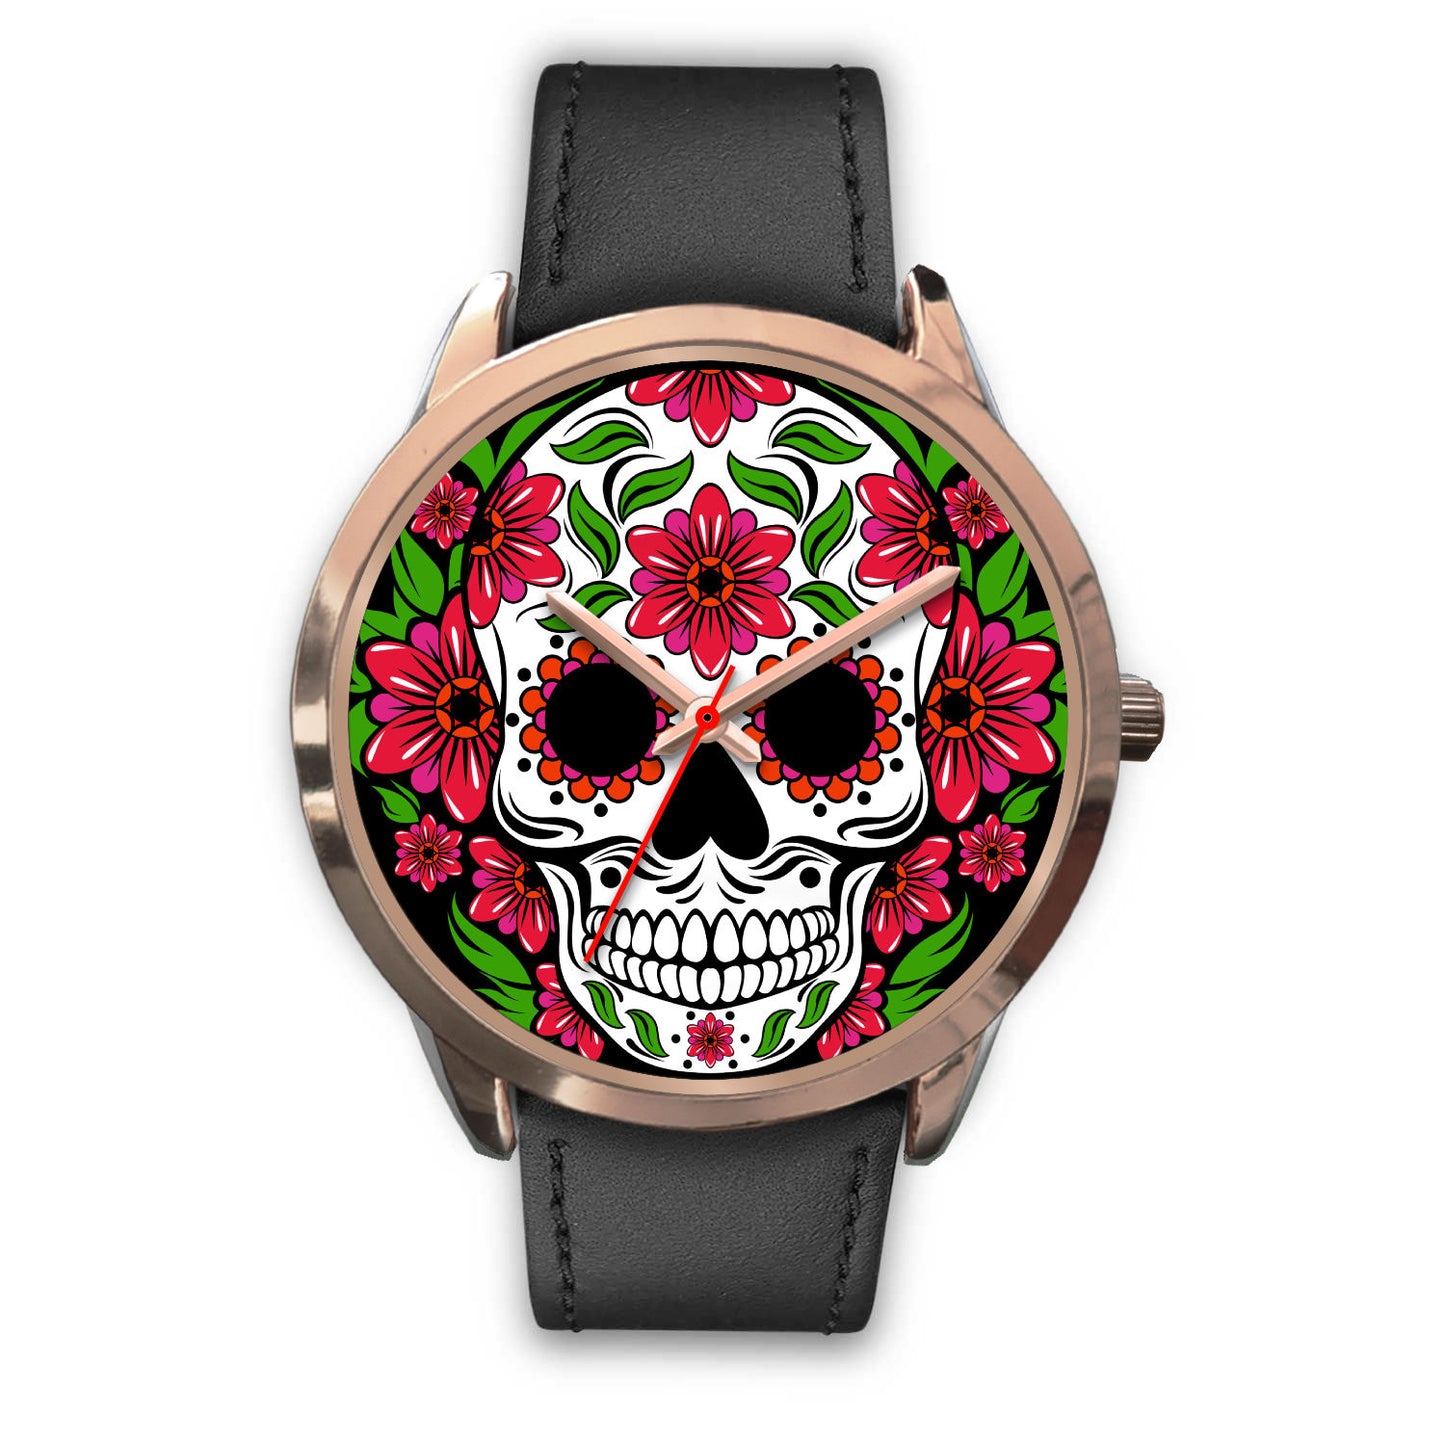 Sugar skull watch - floral skull watch